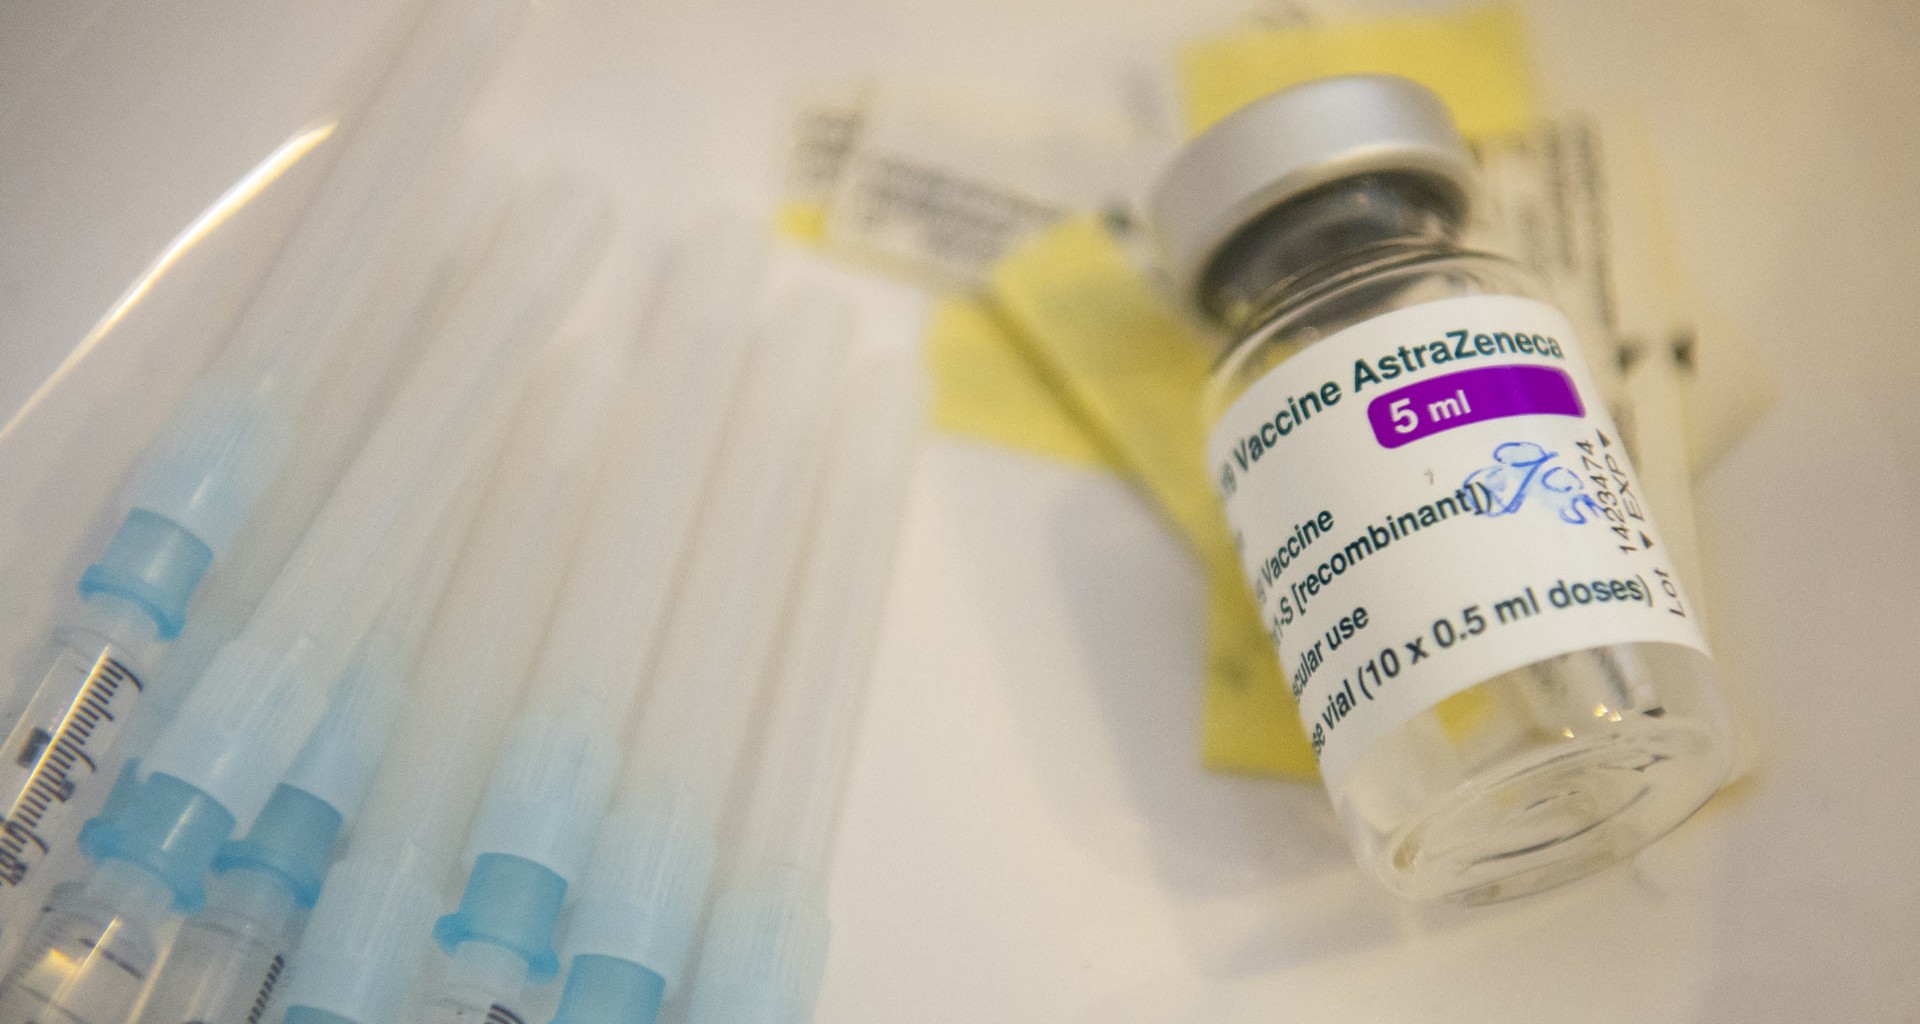 vacuna astrazeneca es segura expertos tecsalud tec monterrey responden